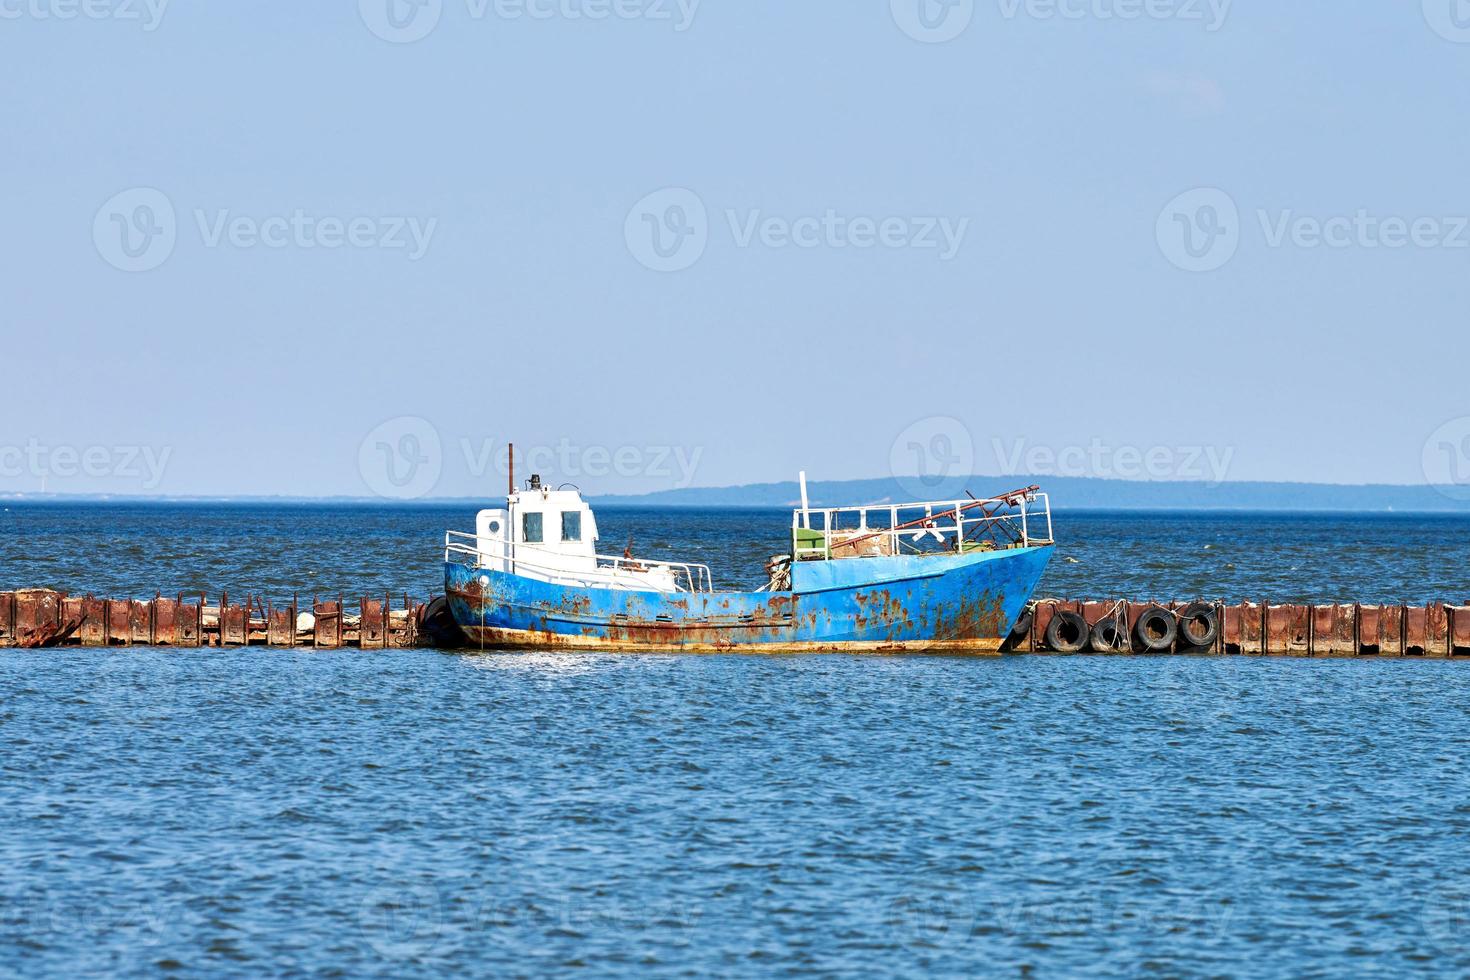 viejo y oxidado barco de pesca abandonado amarrado a un muelle oxidado, barco de pesca naufragado y desgastado en el mar foto